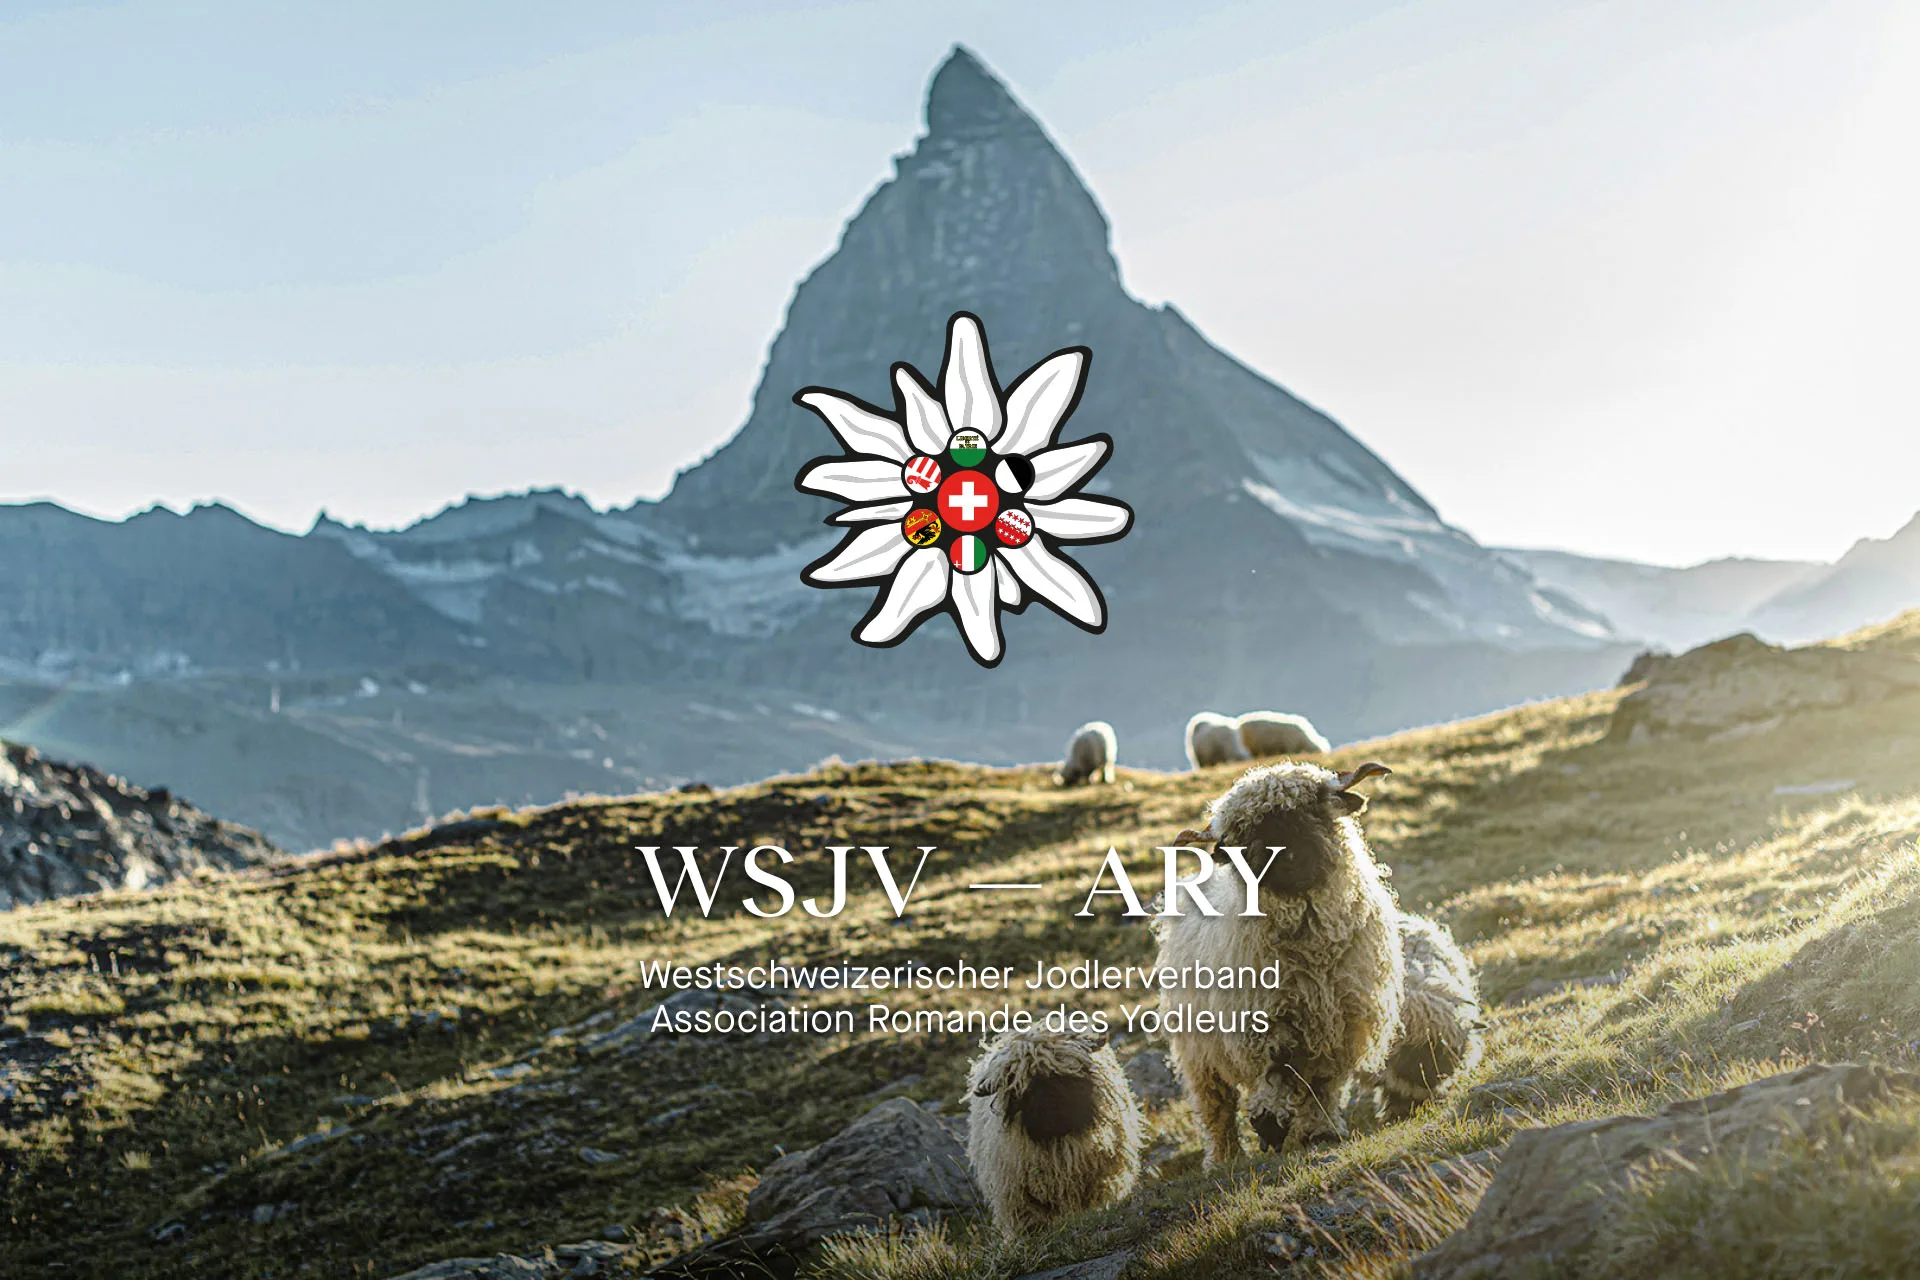 Visual des WSJV mit dem Matterhorn und Schafen.